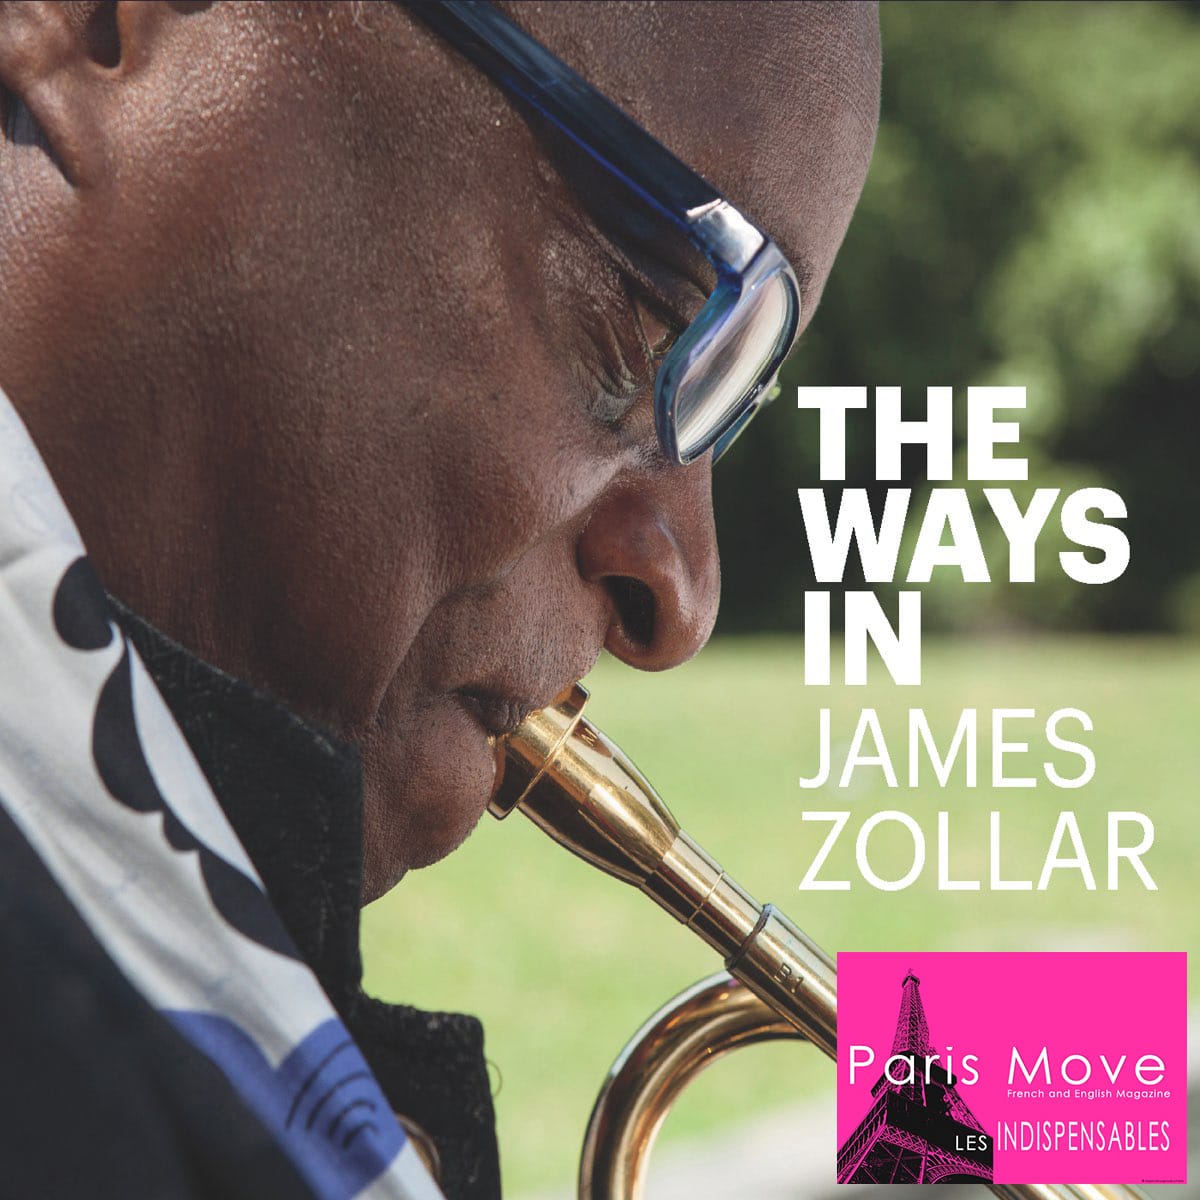 James Zollar – The Ways in